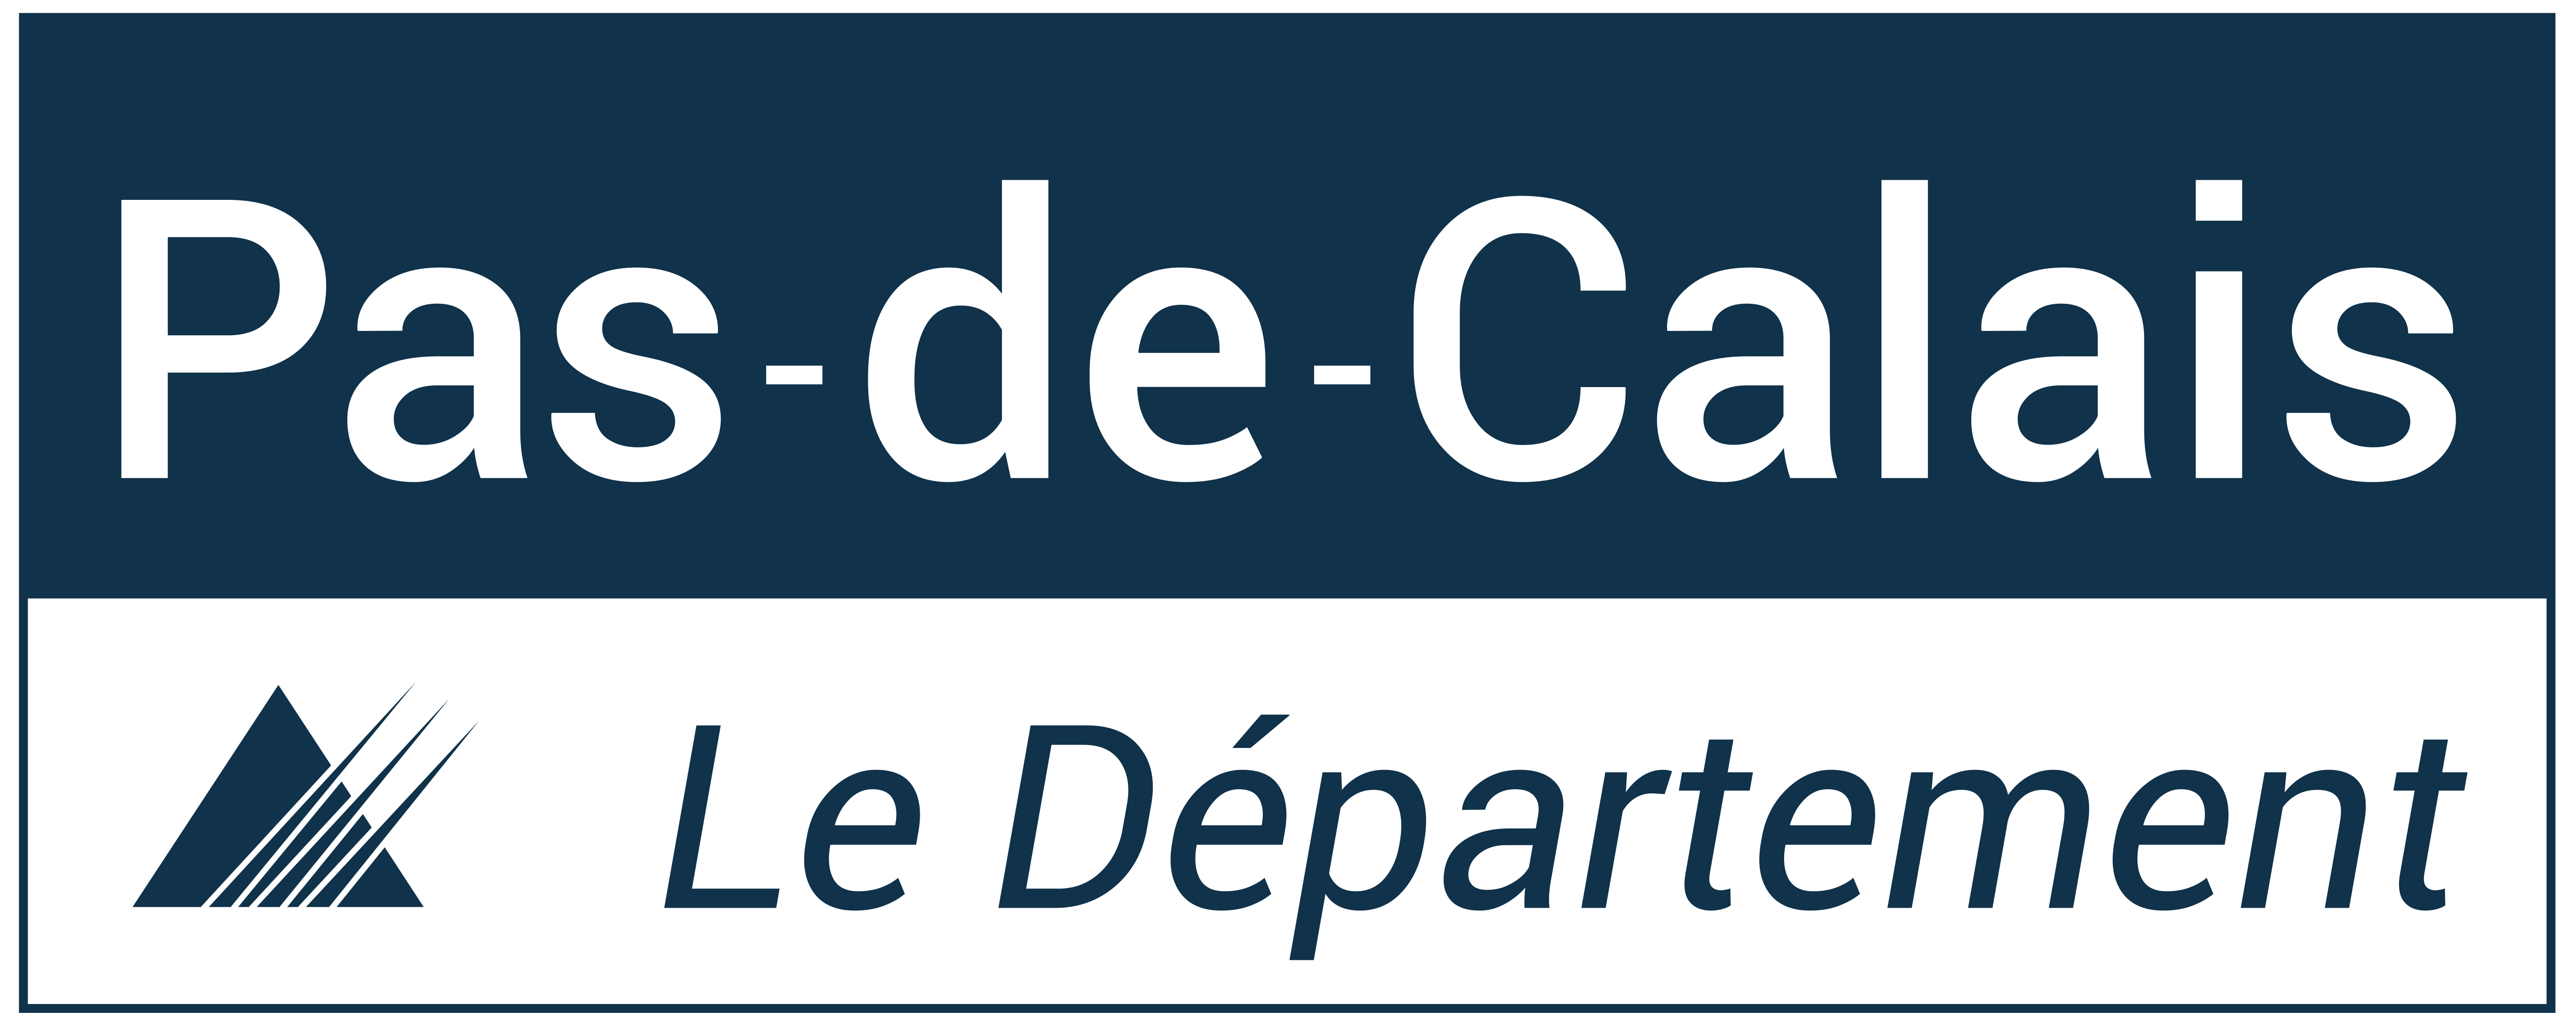 Pas-de-Calais le département